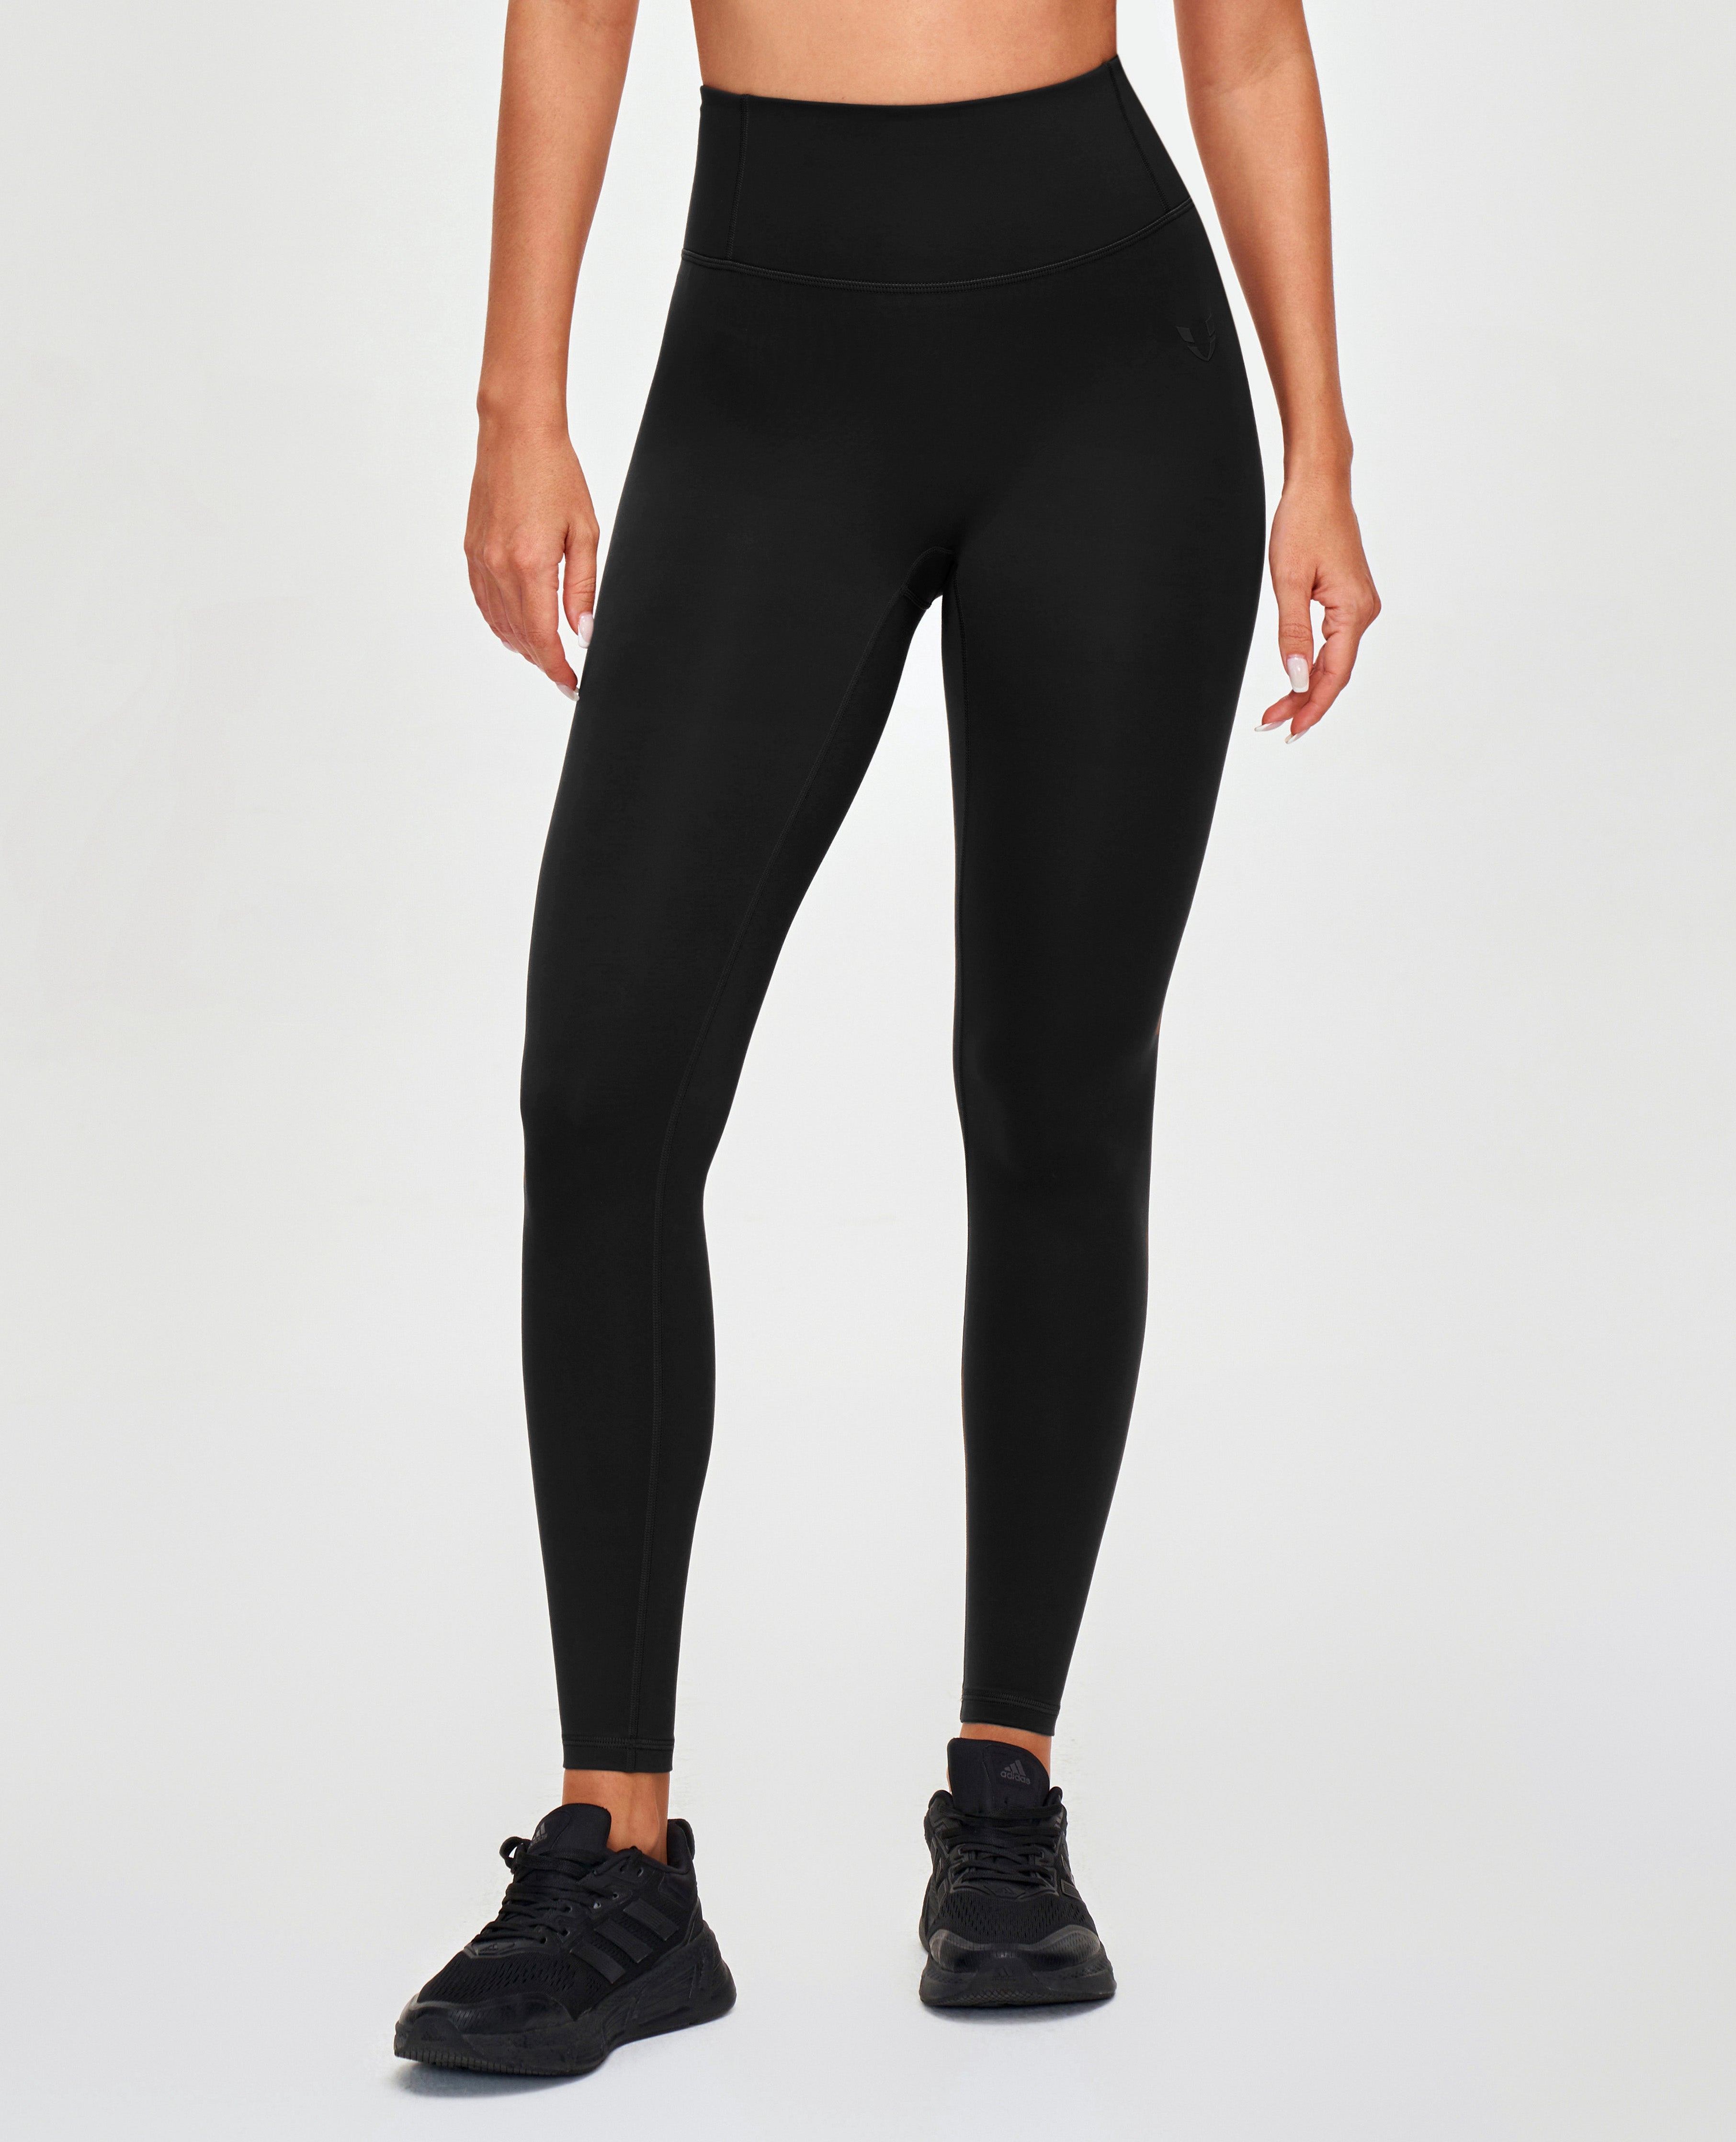 Black Scrunch Butt Gym Leggings - Empowerclothingltd